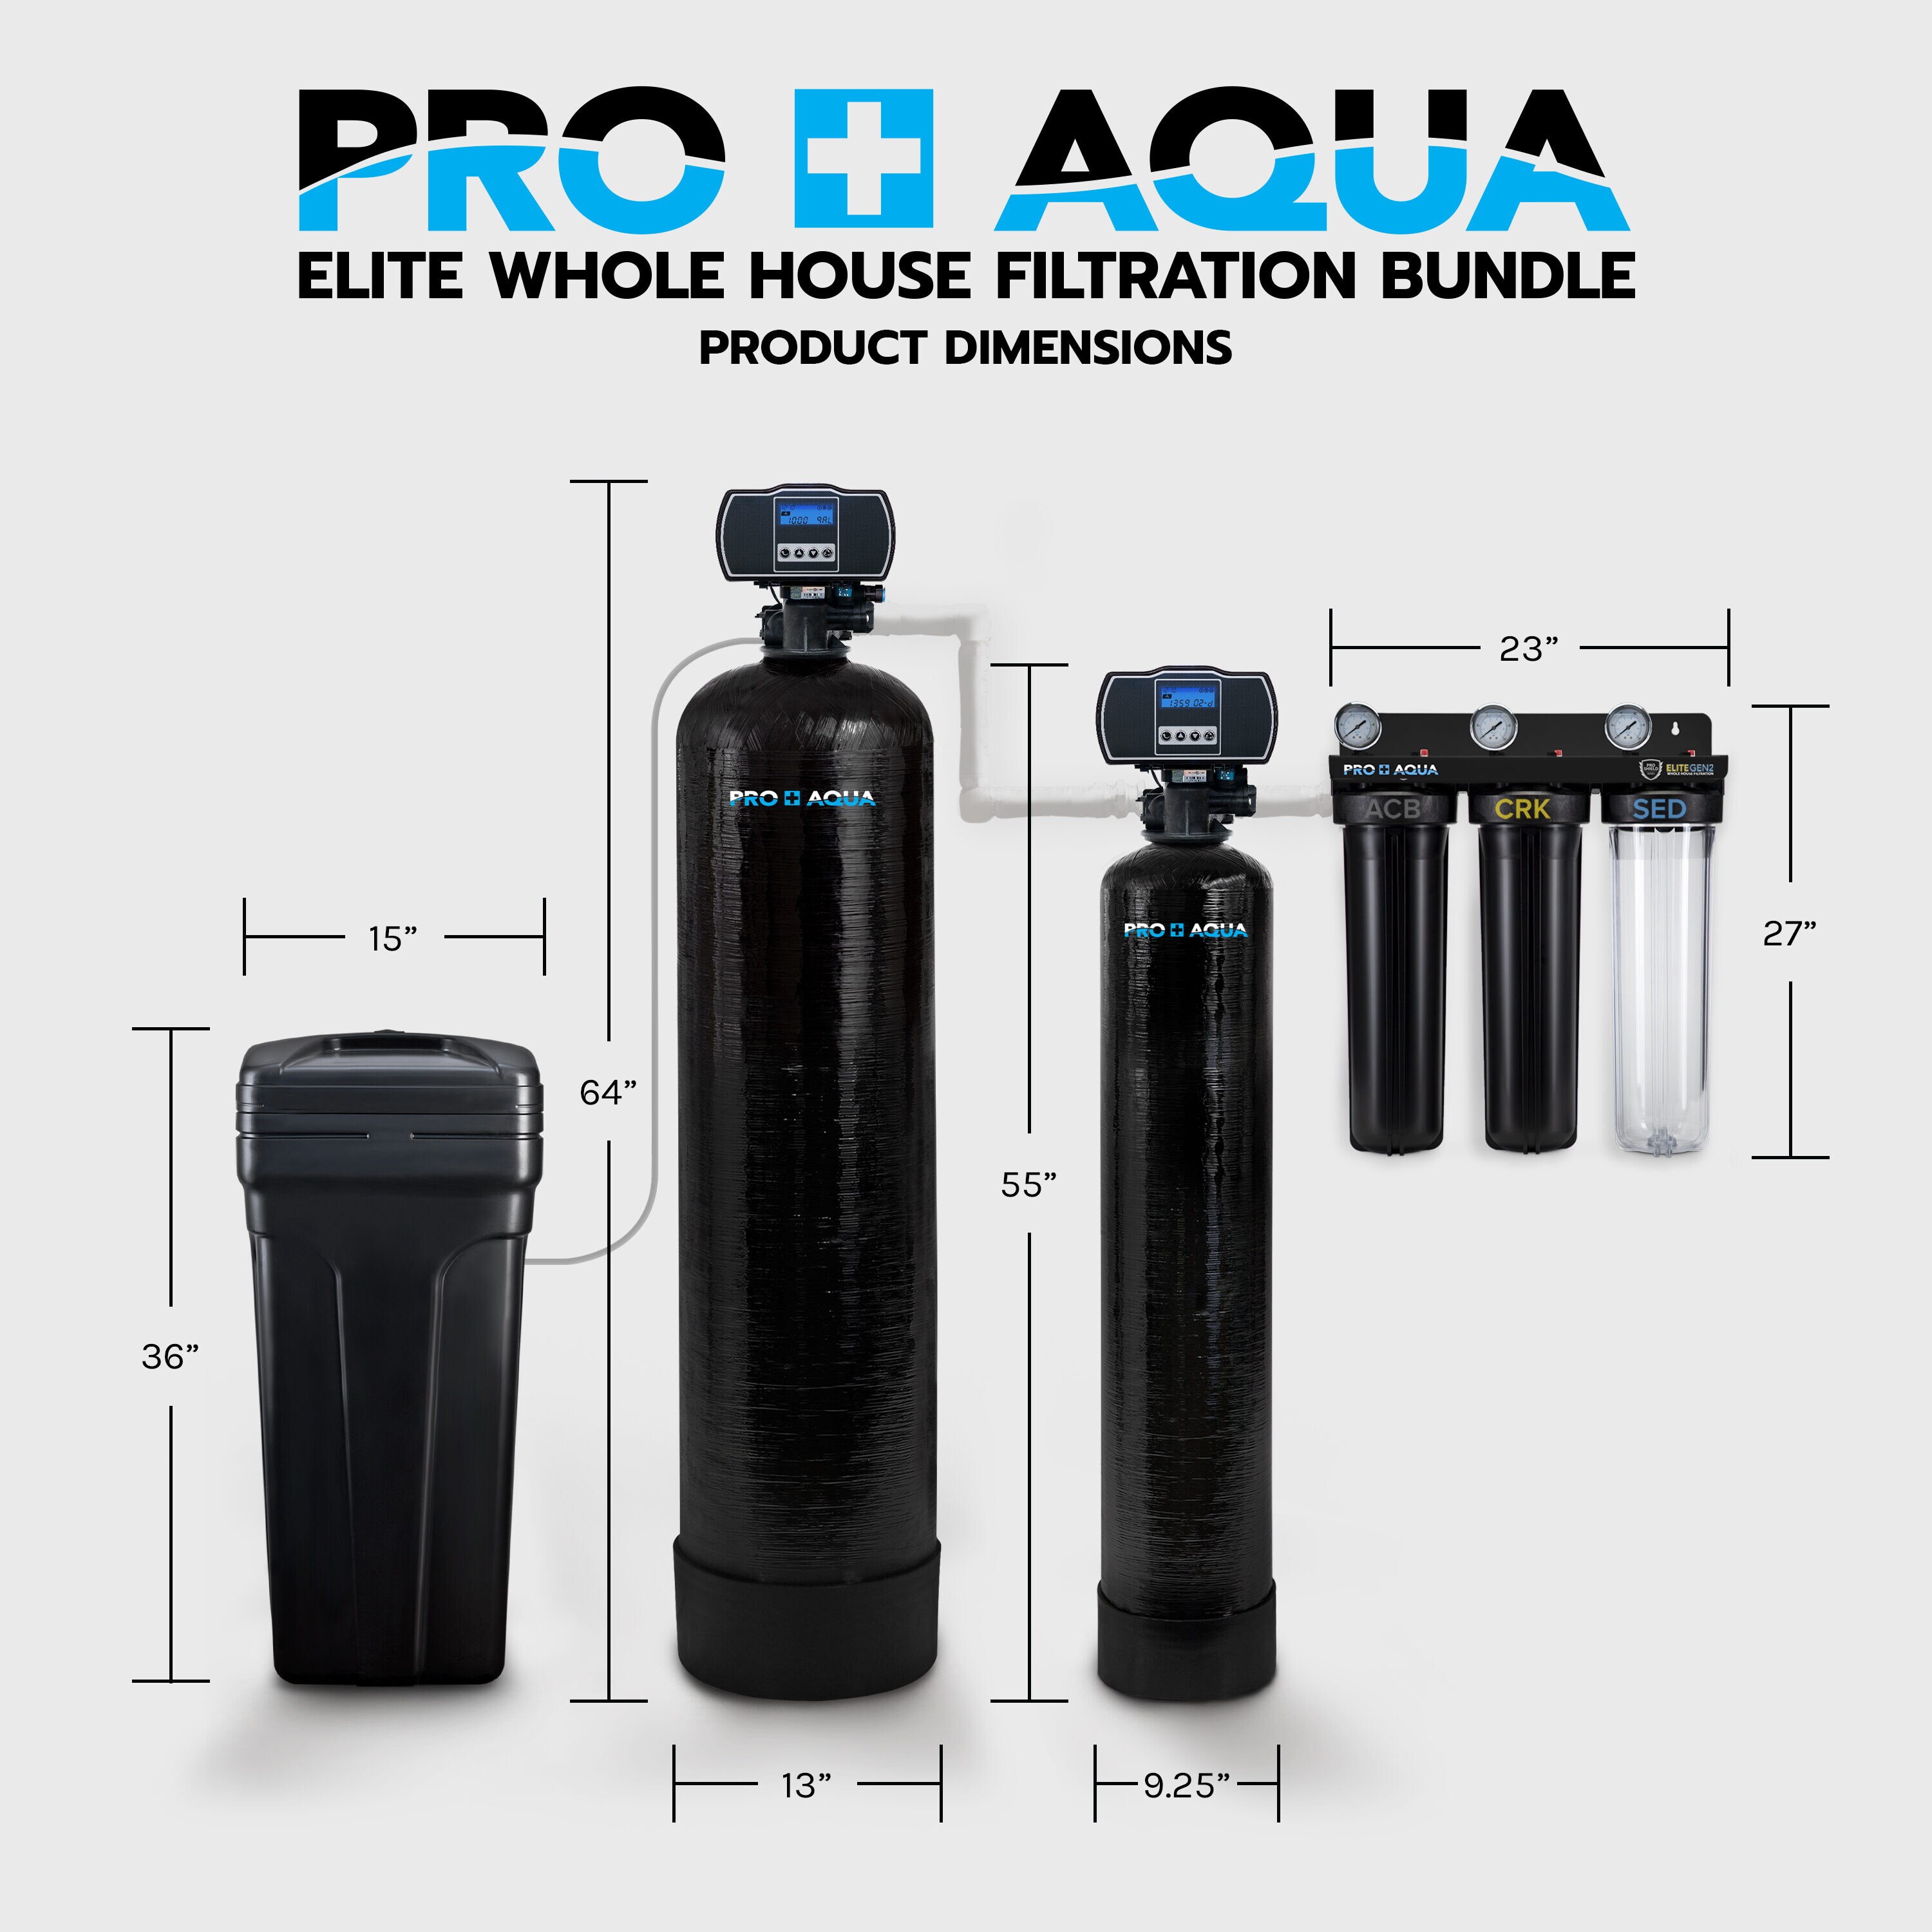 PRO+AQUA WS-P-16 Portable RV Water Softener 16,000 Grain PRO